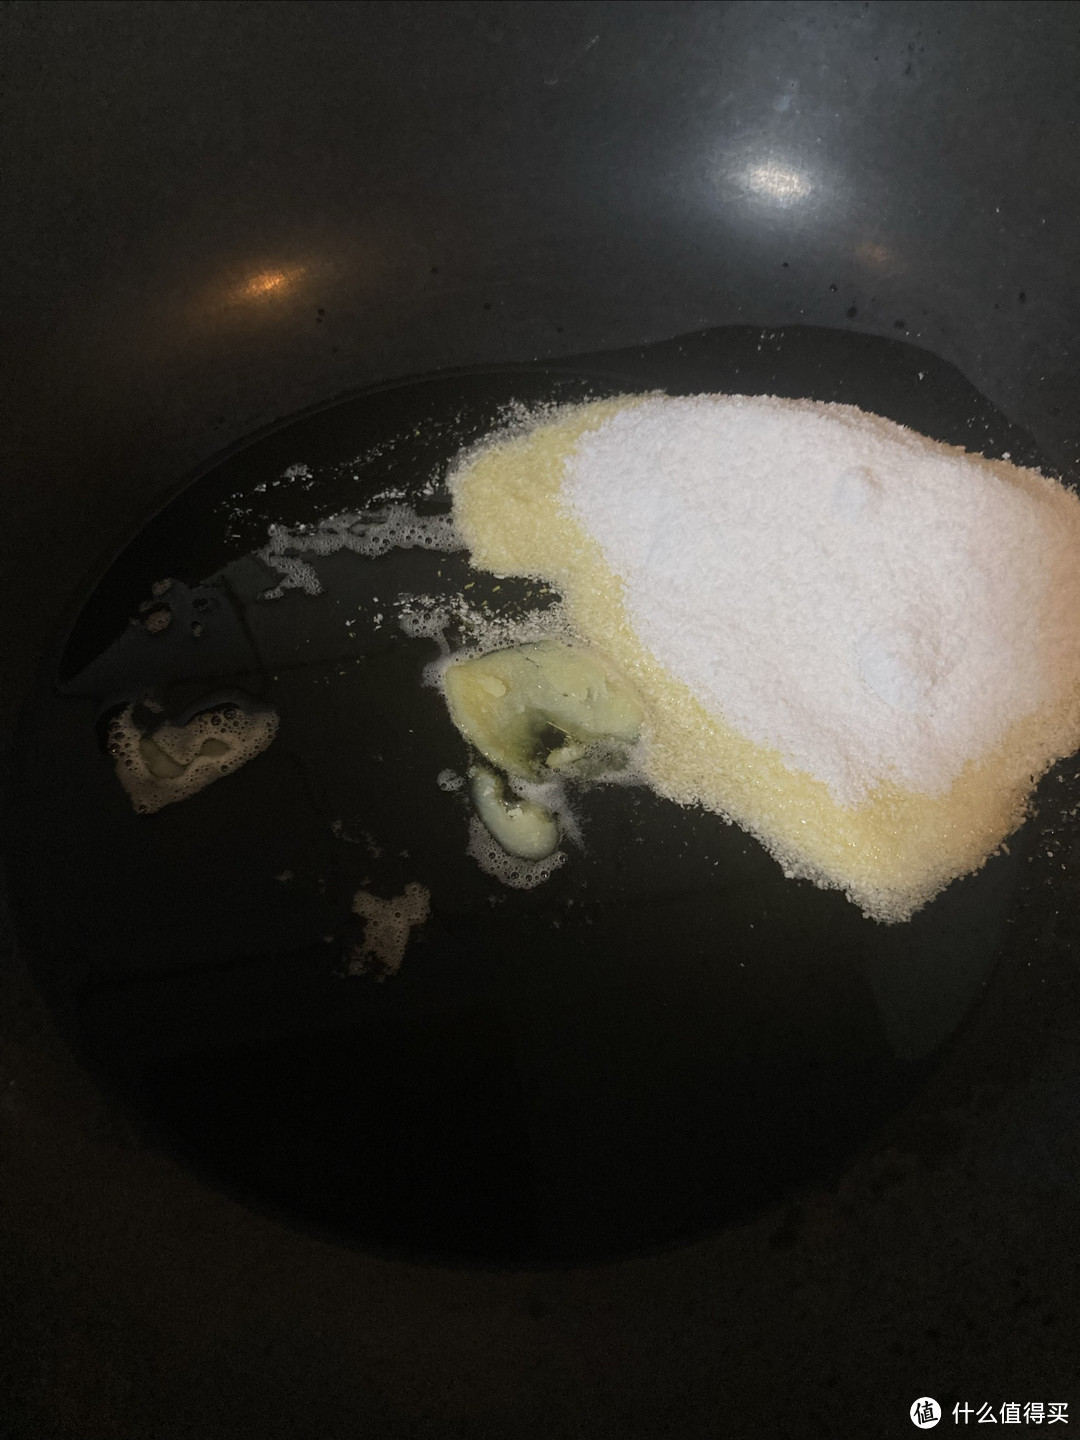 黄油和椰蓉先下锅炒香 让椰蓉吸饱黄油